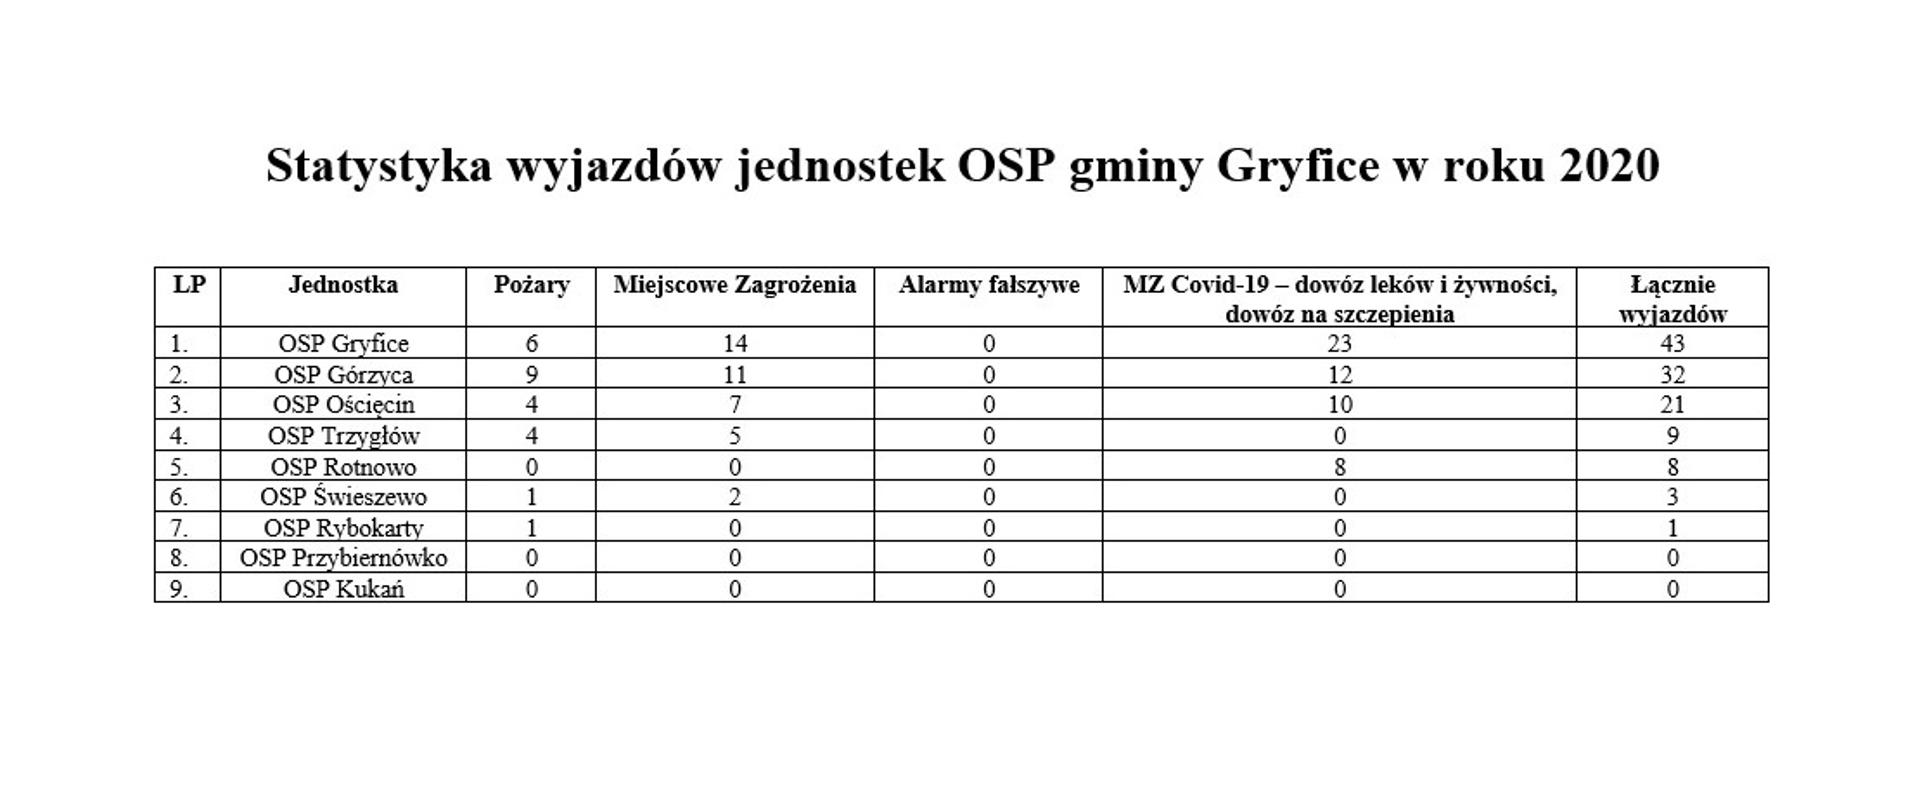 na zdjęciu tabela z wyjazdami jednostek OSP gminy Gryfice za rok 2020